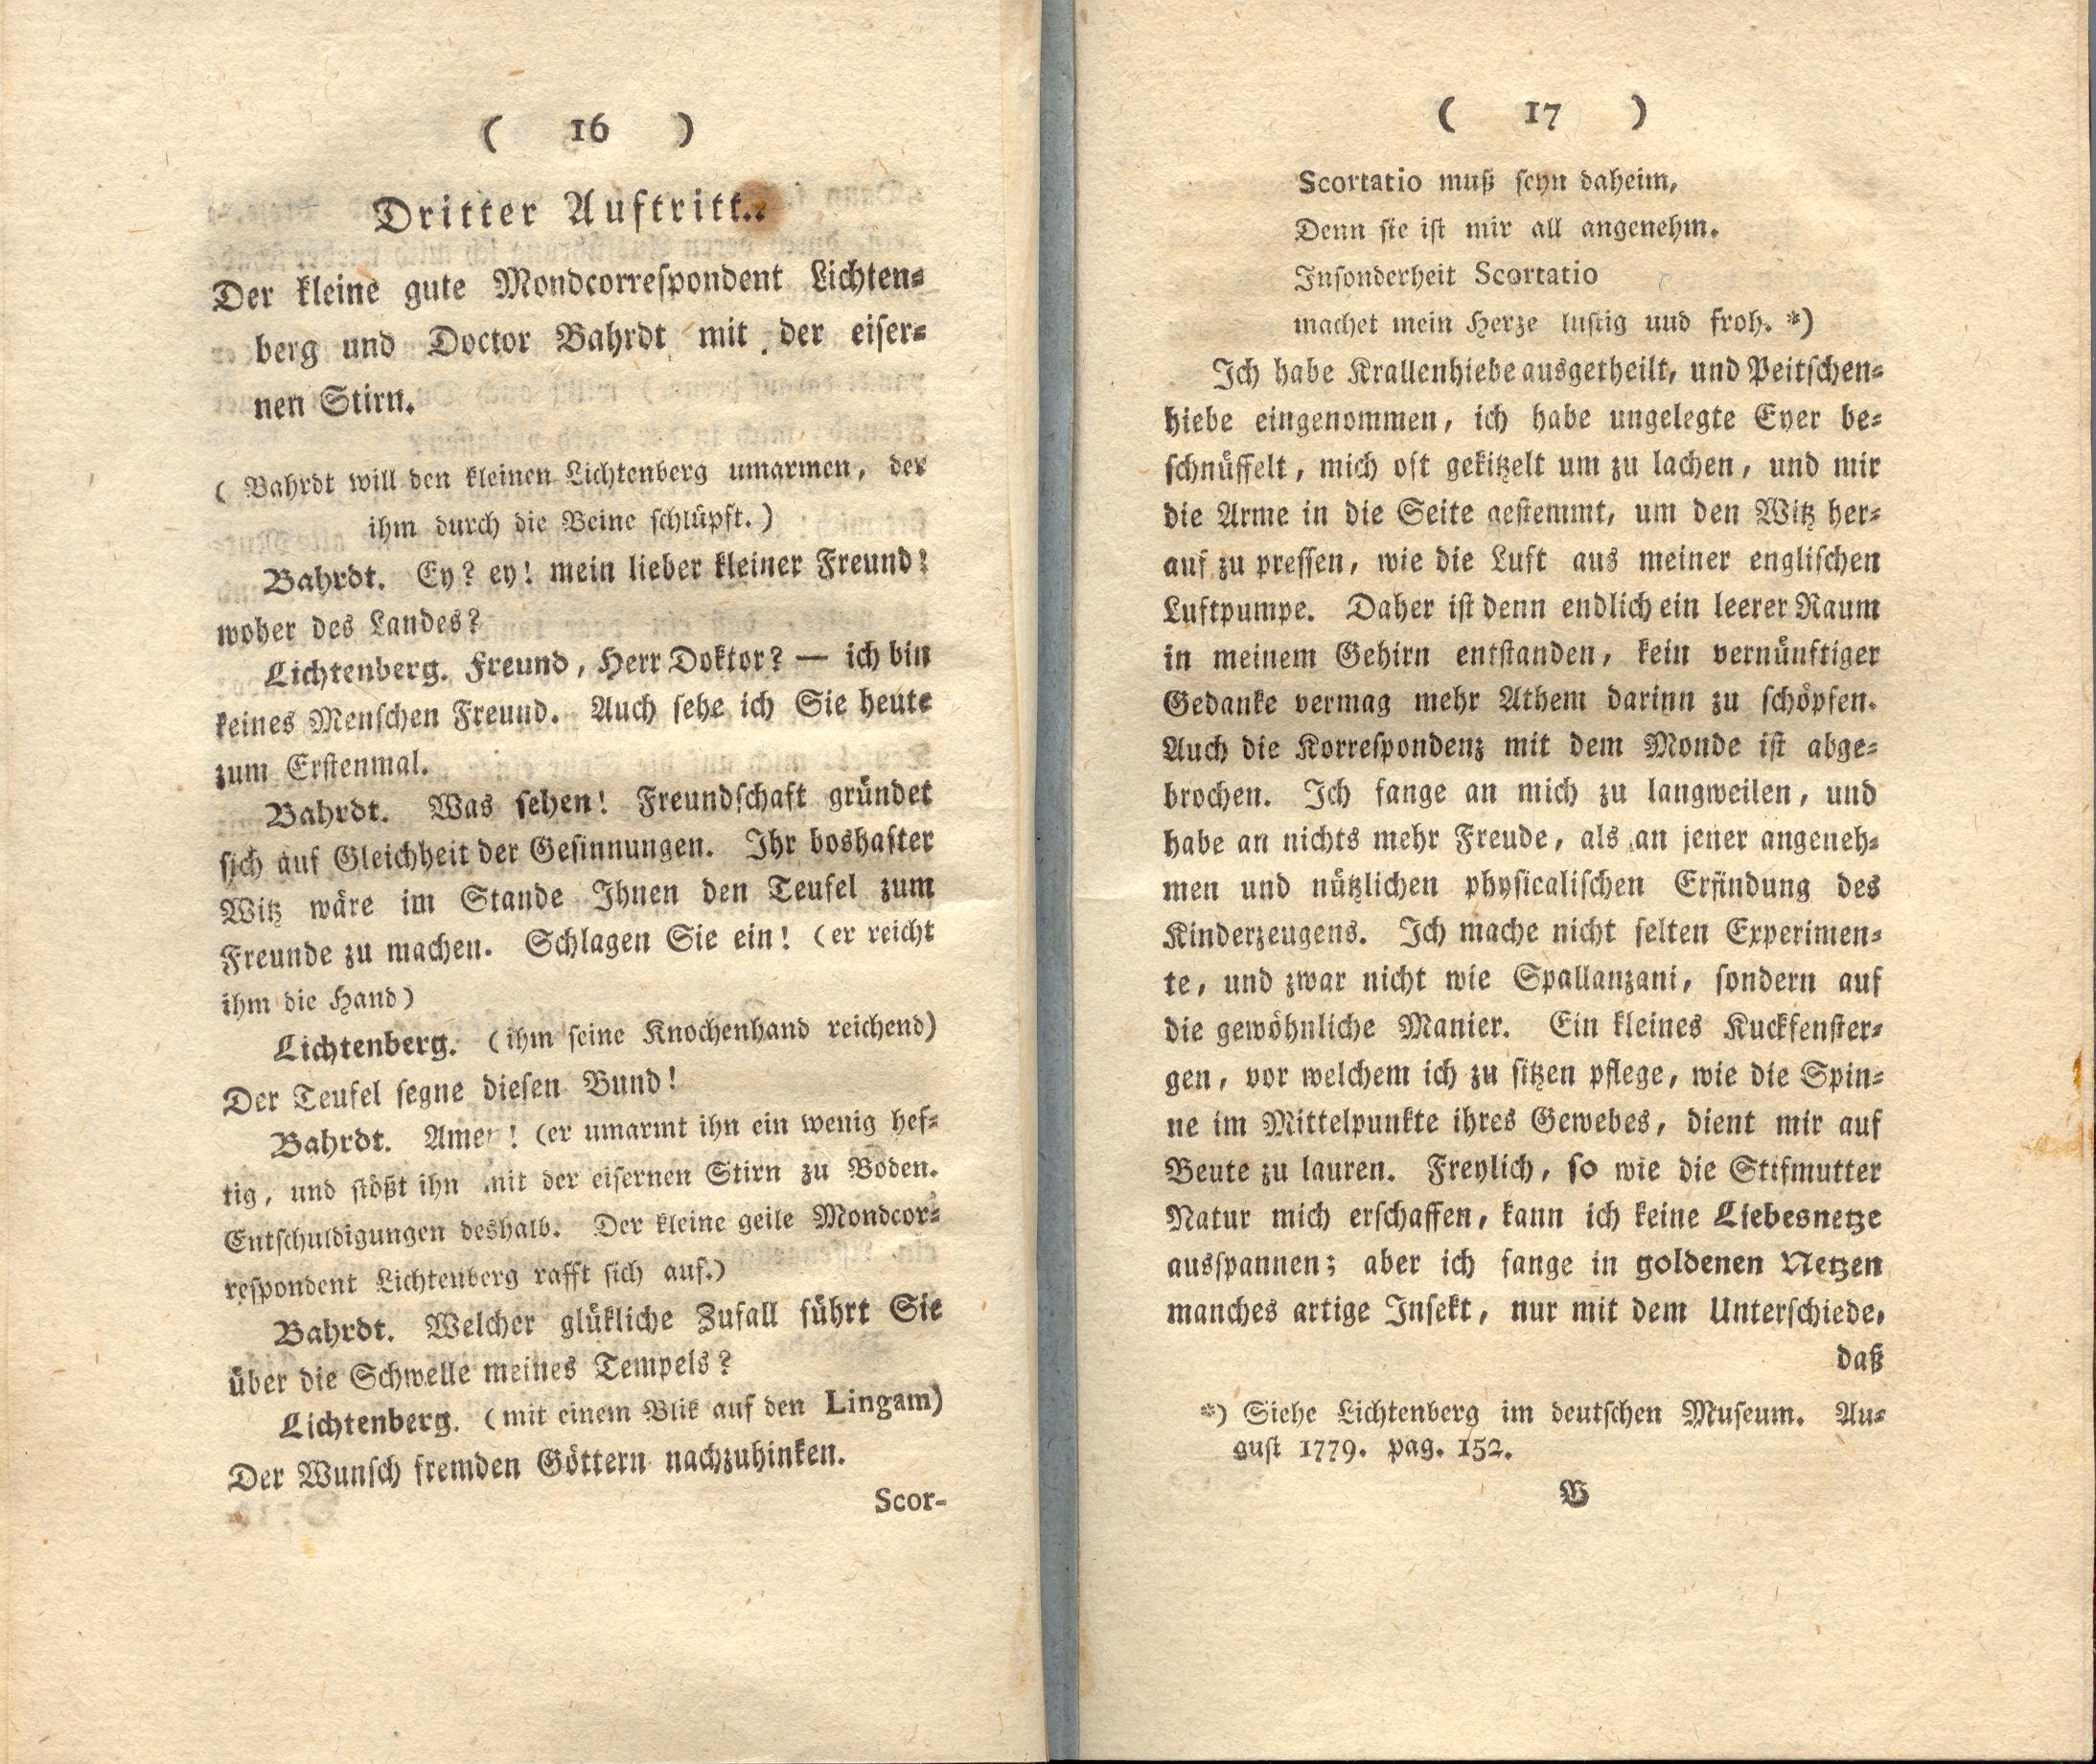 Doctor Bahrdt mit der eisernen Stirn (1790) | 10. (16-17) Основной текст